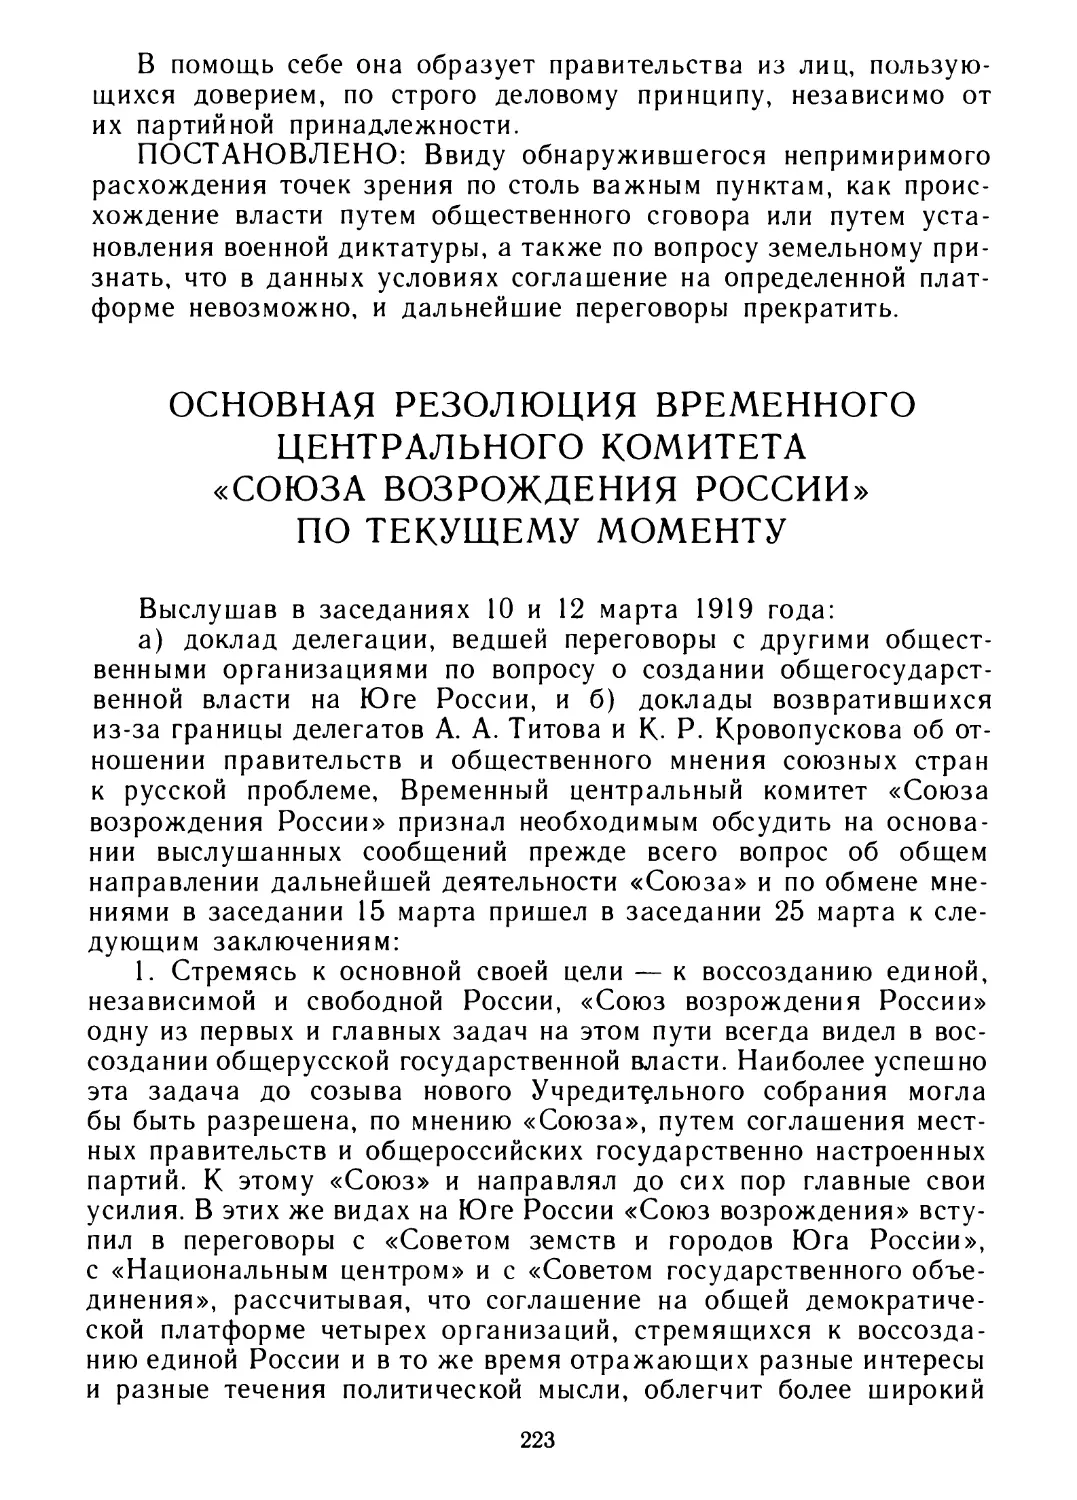 Основная резолюция временного Центрального Комитета «Союза возрождения России» по текущему моменту